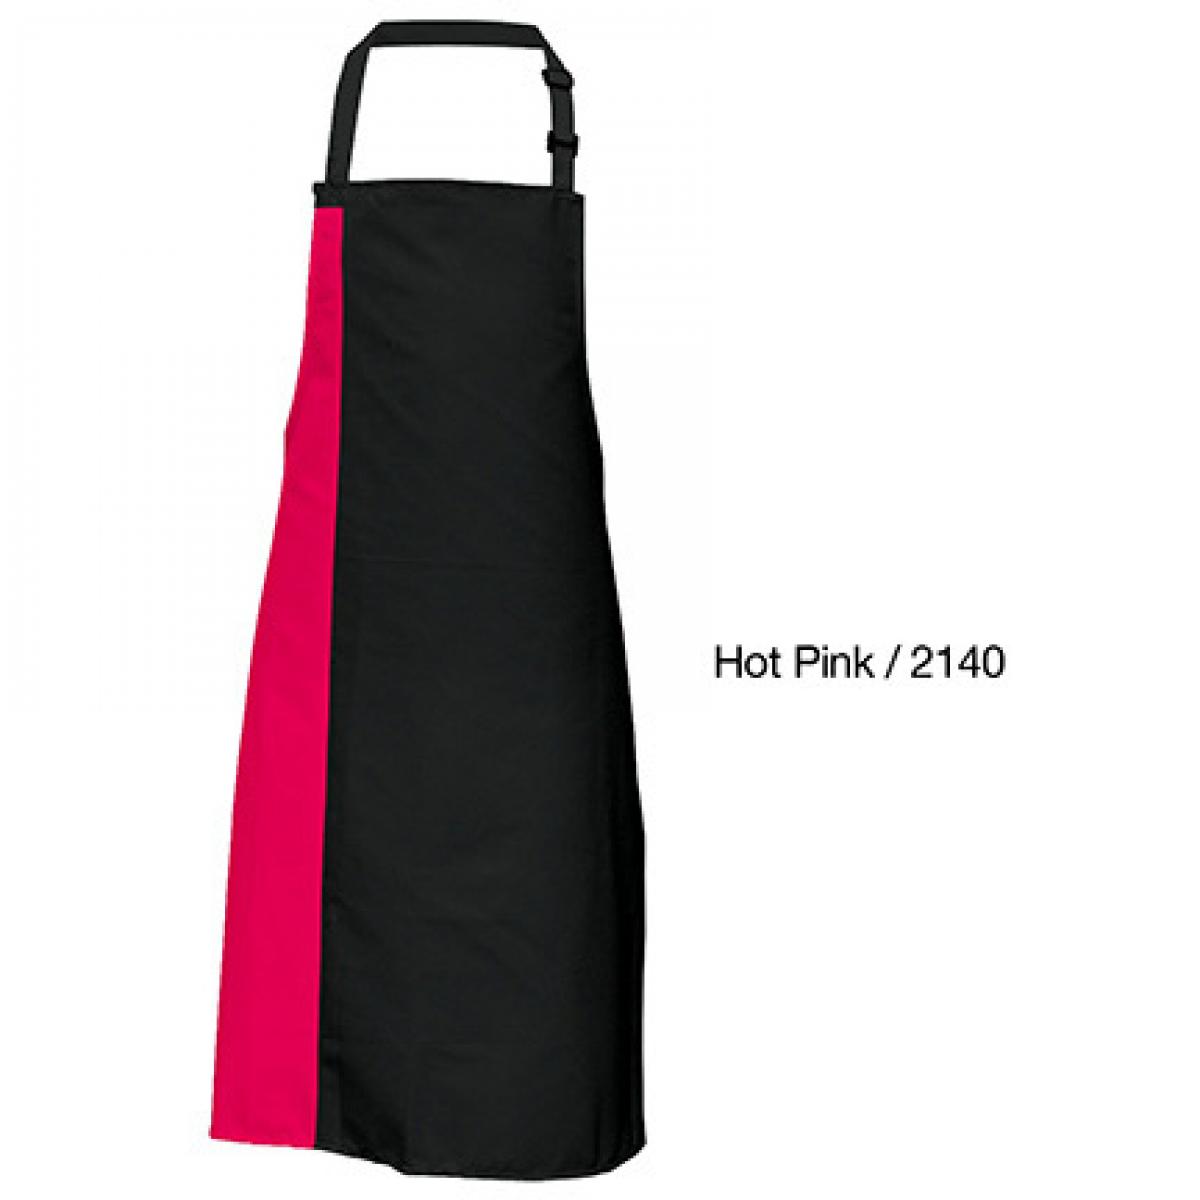 Hersteller: Link Kitchen Wear Herstellernummer: DS8572 Artikelbezeichnung: Duo Apron - 72 x 85 cm - Waschbar bis 60 °C Farbe: Black/Hot Pink (ca. Pantone 241c)